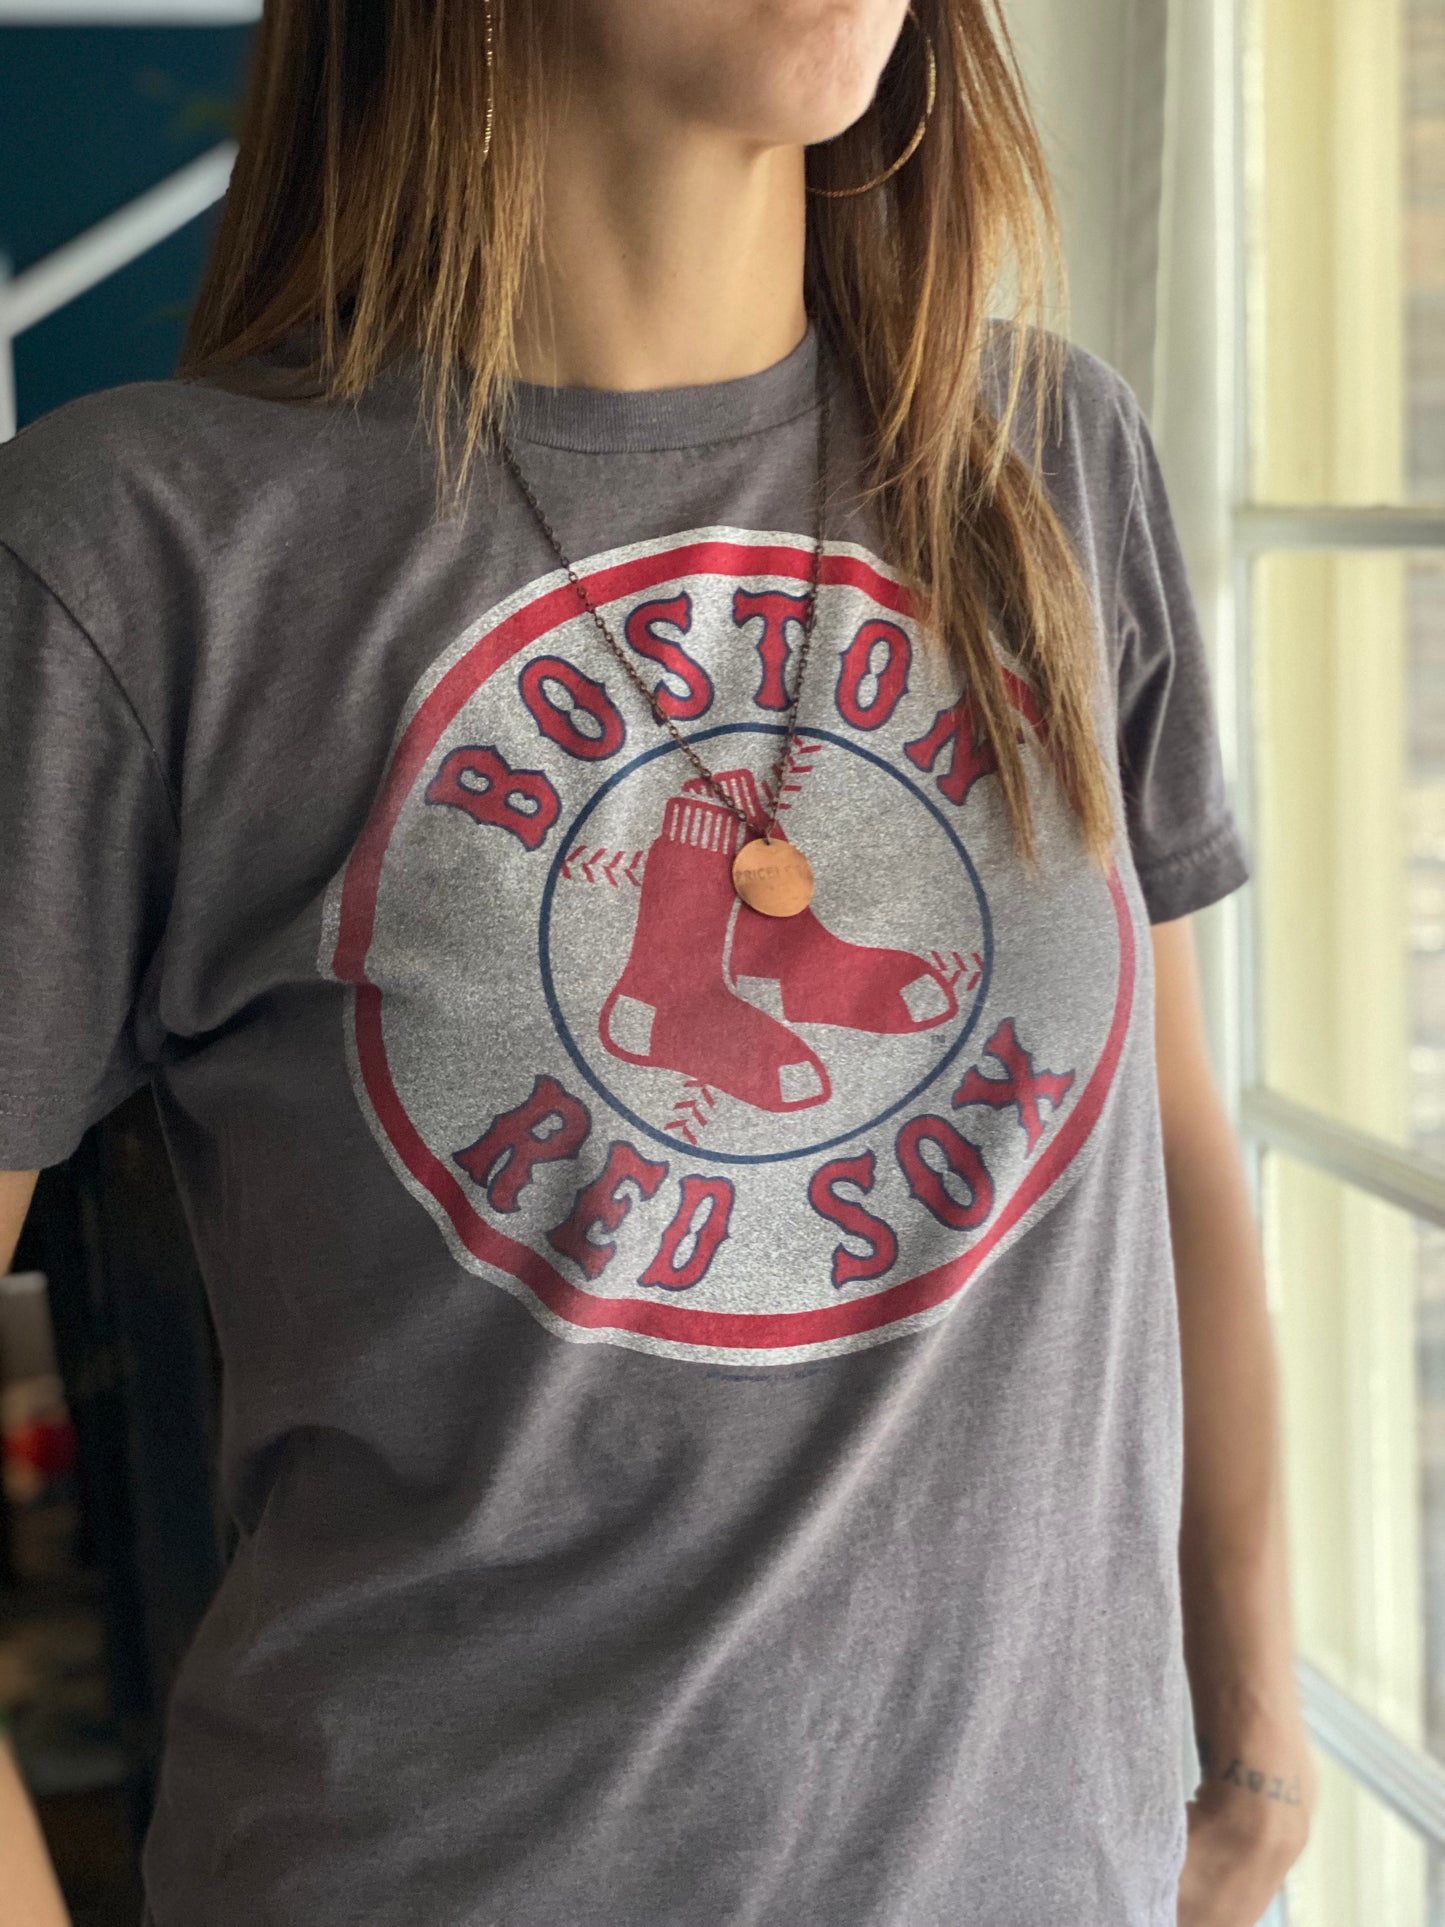 Boston Red socks (Retro T-Shirt)